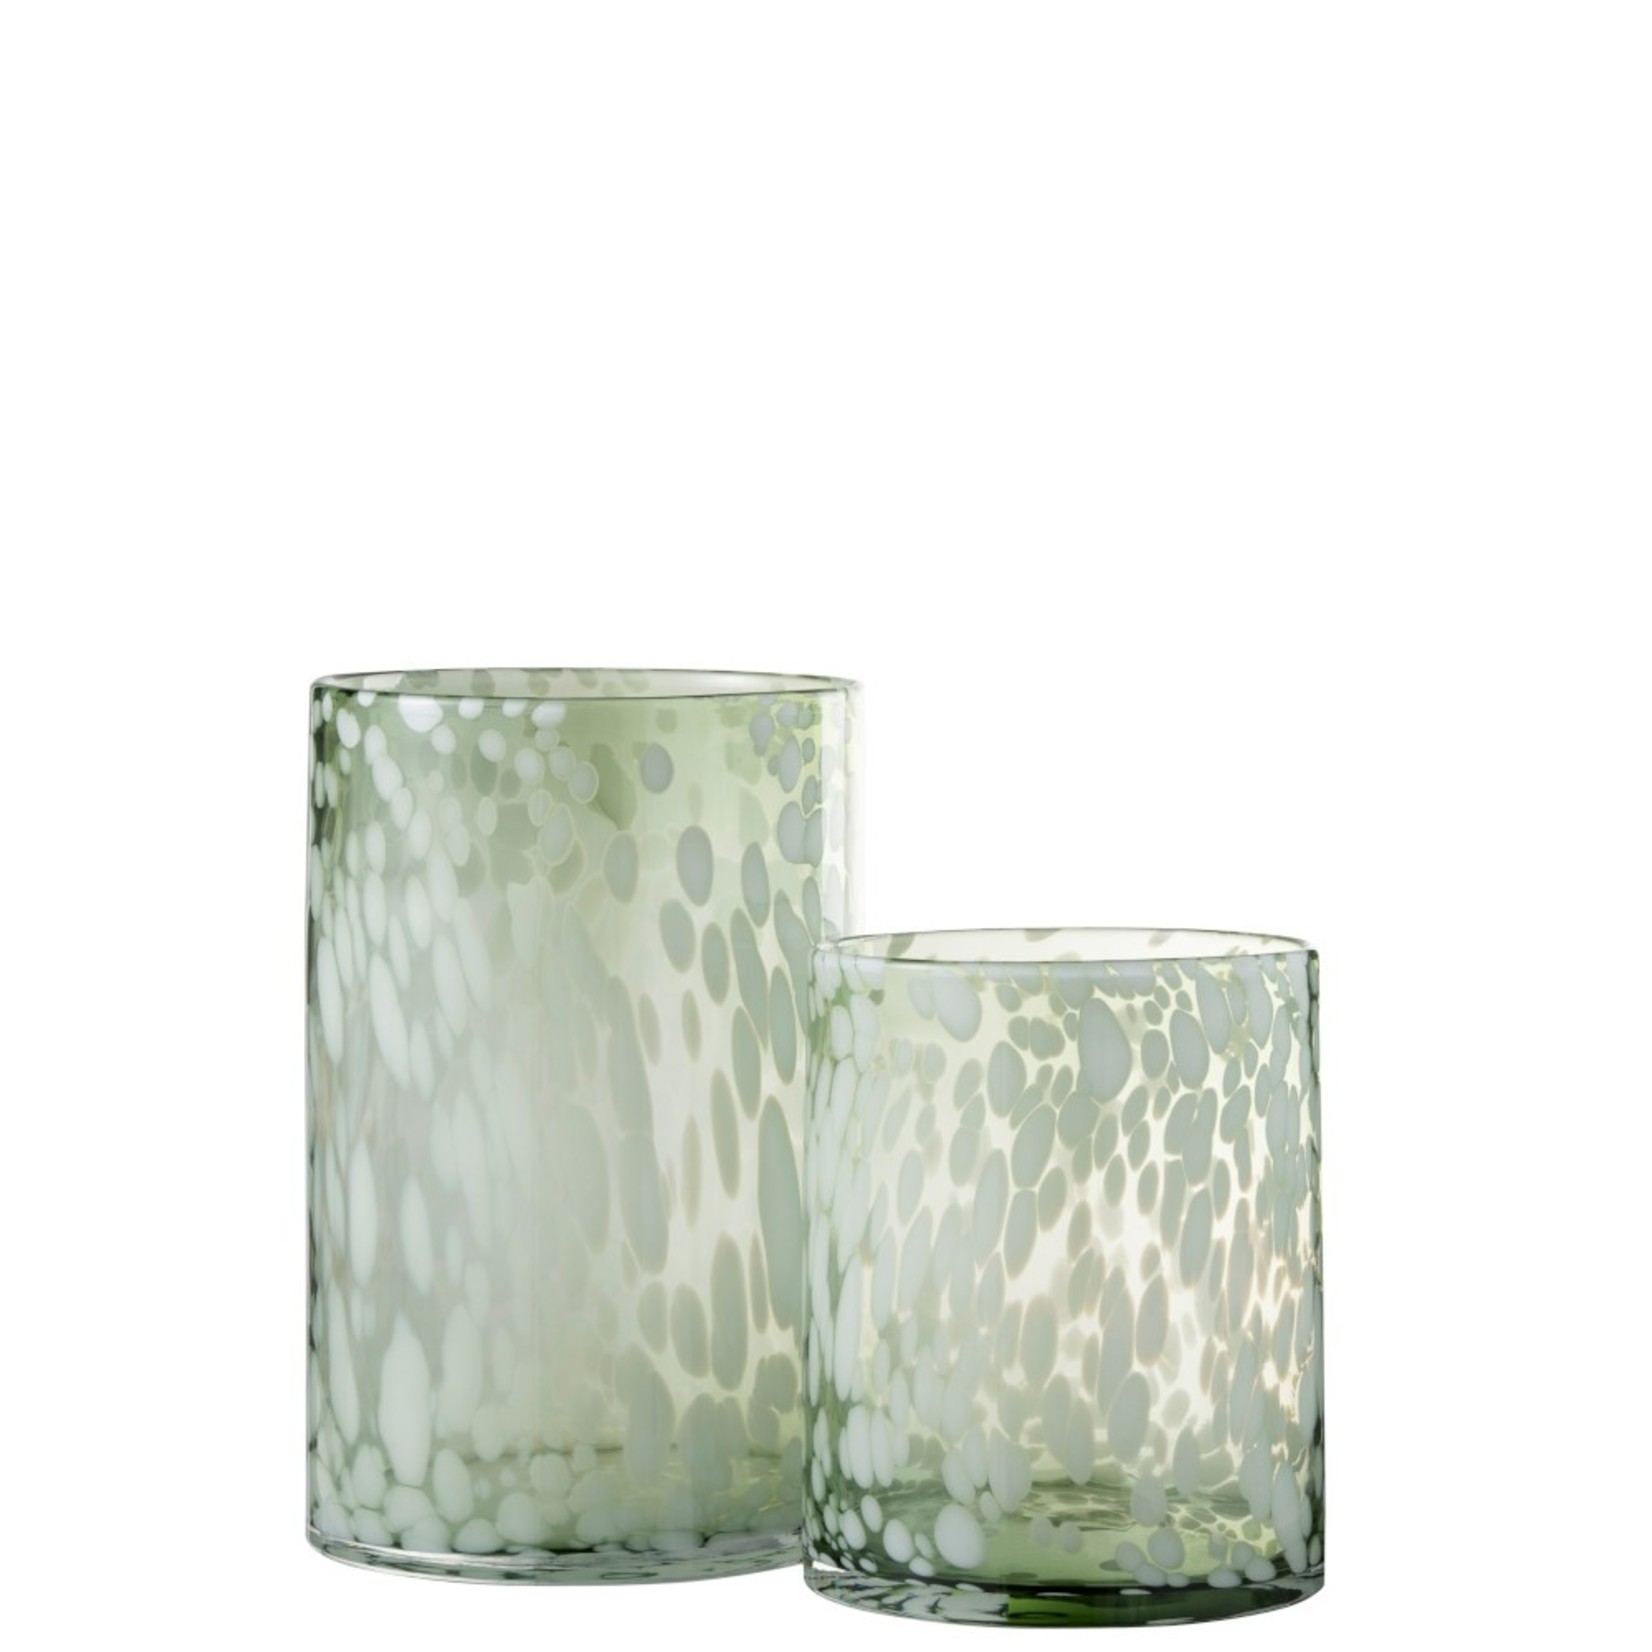 J-Line Theelichthouder Glas Spikkels Transparant Groen Wit - Large